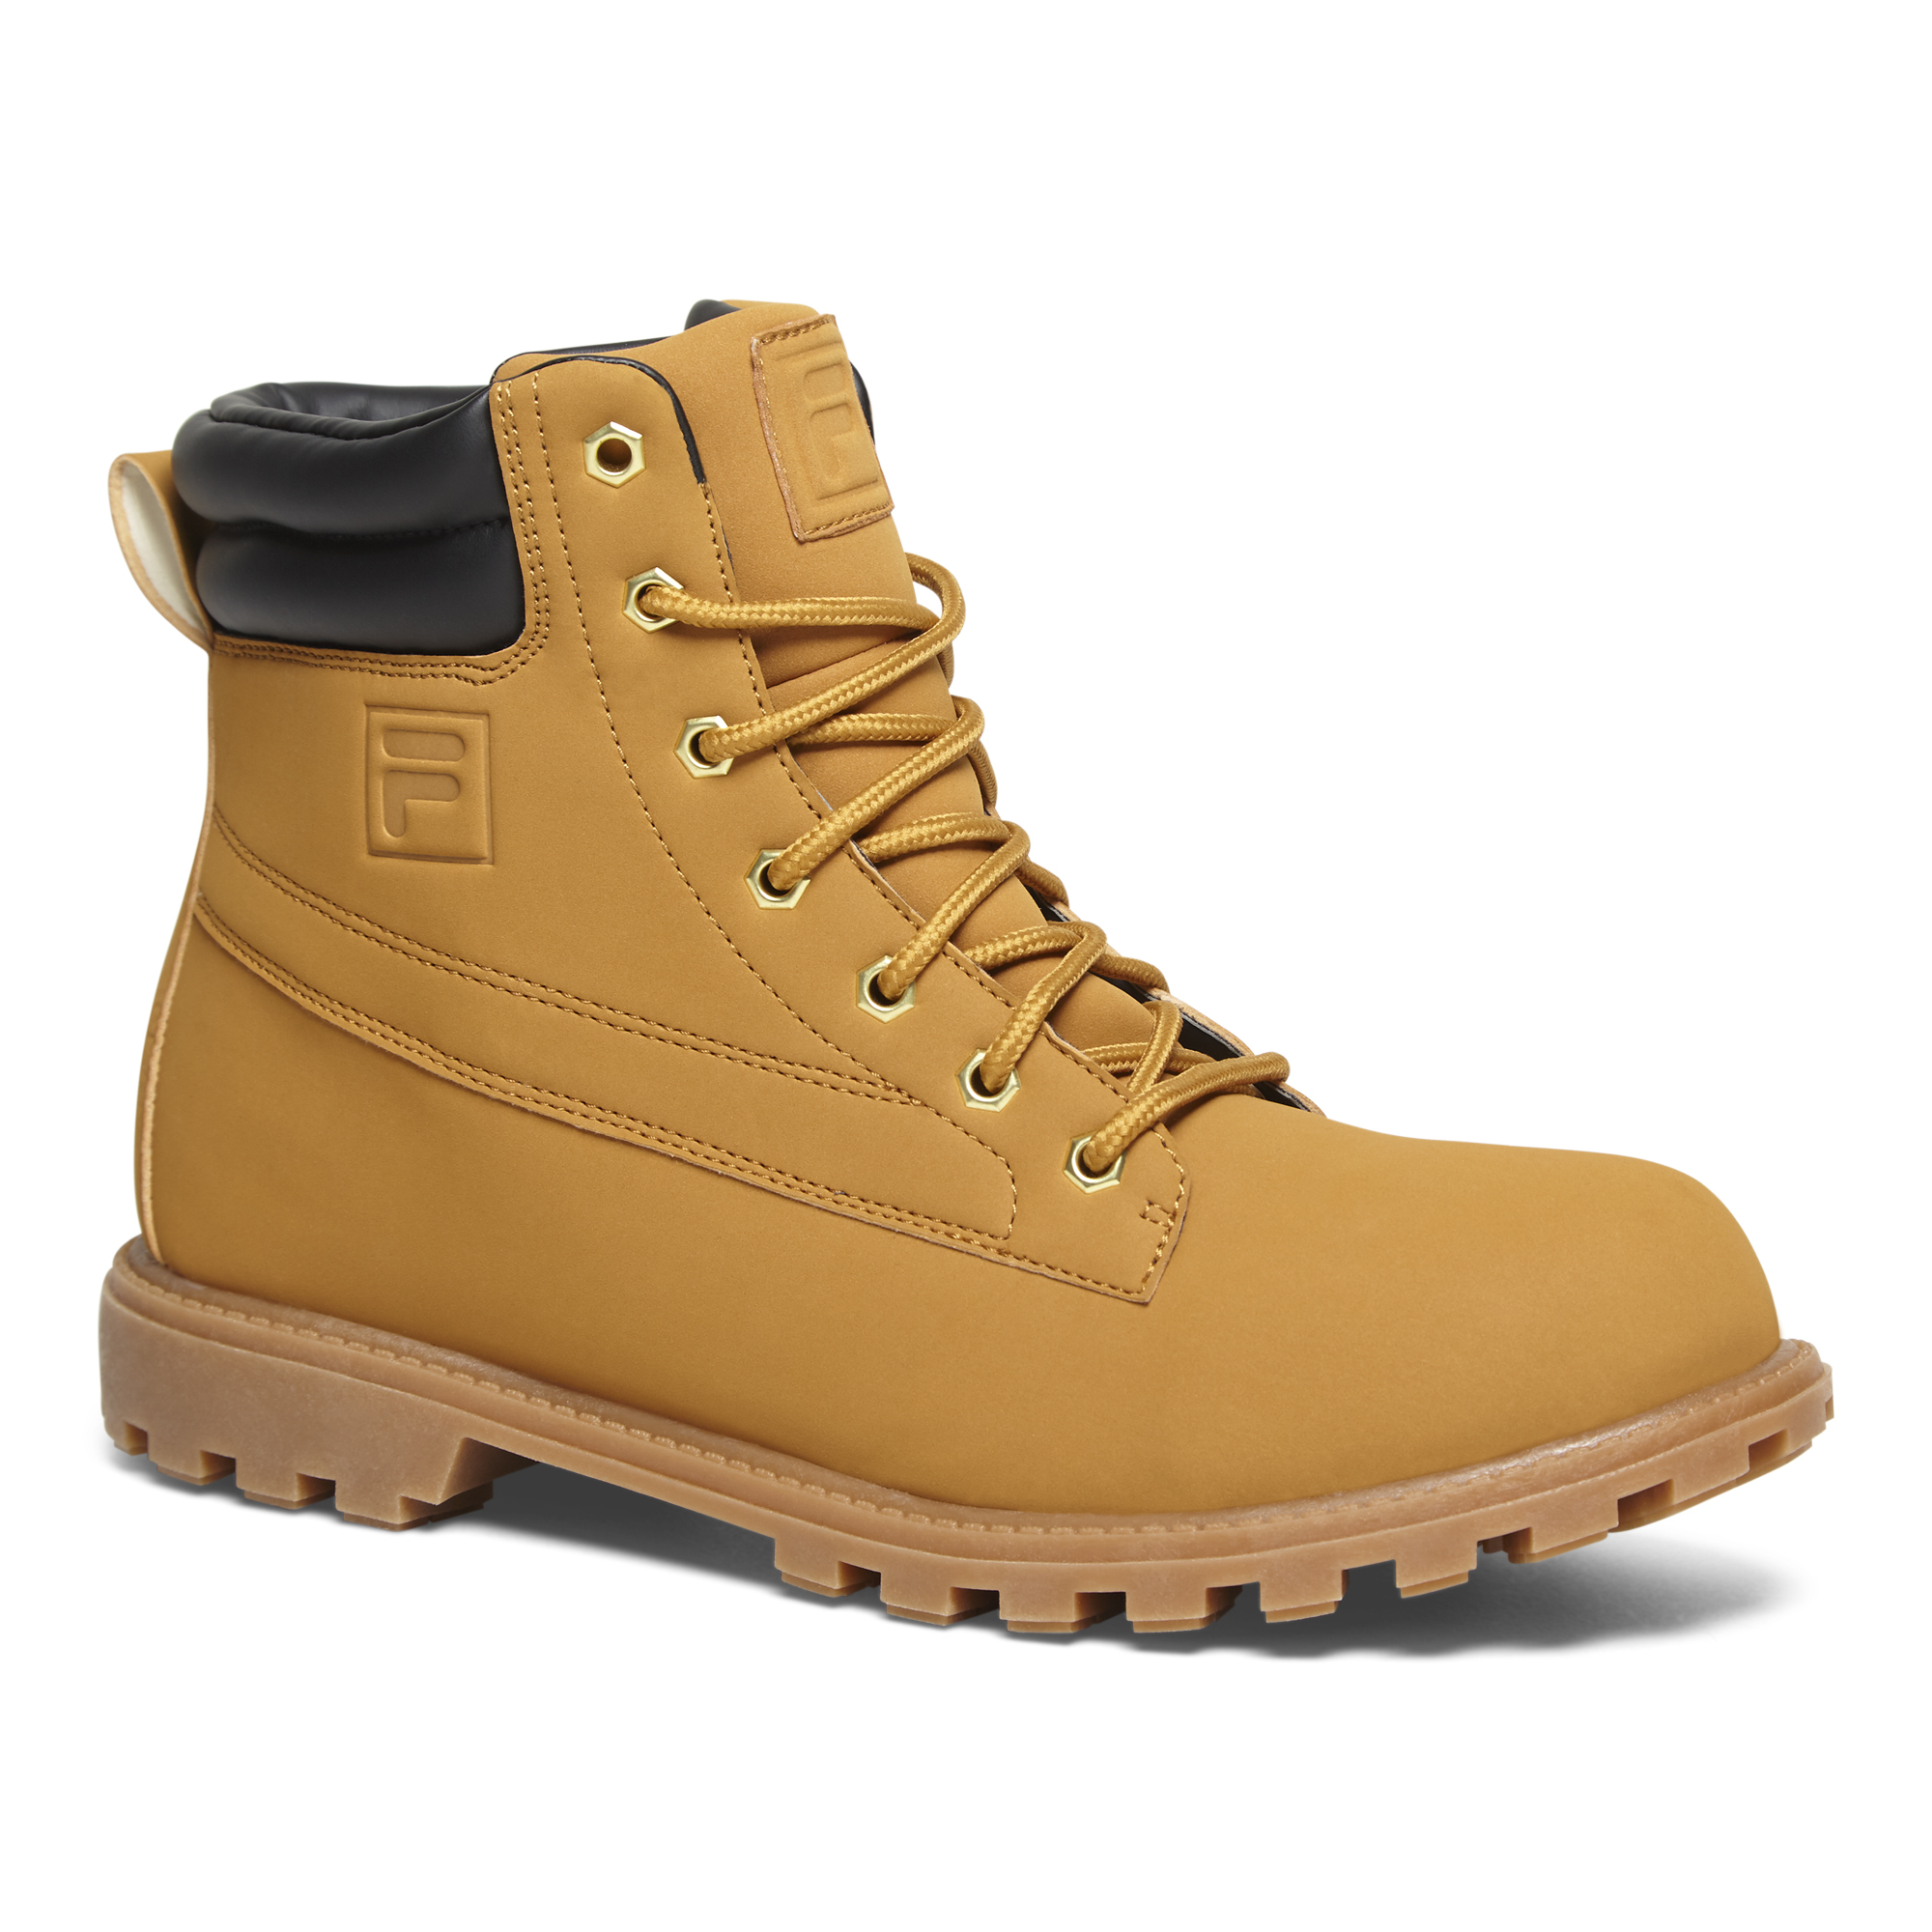 Fila men’s Watersedge waterproof boot for $23 shipped